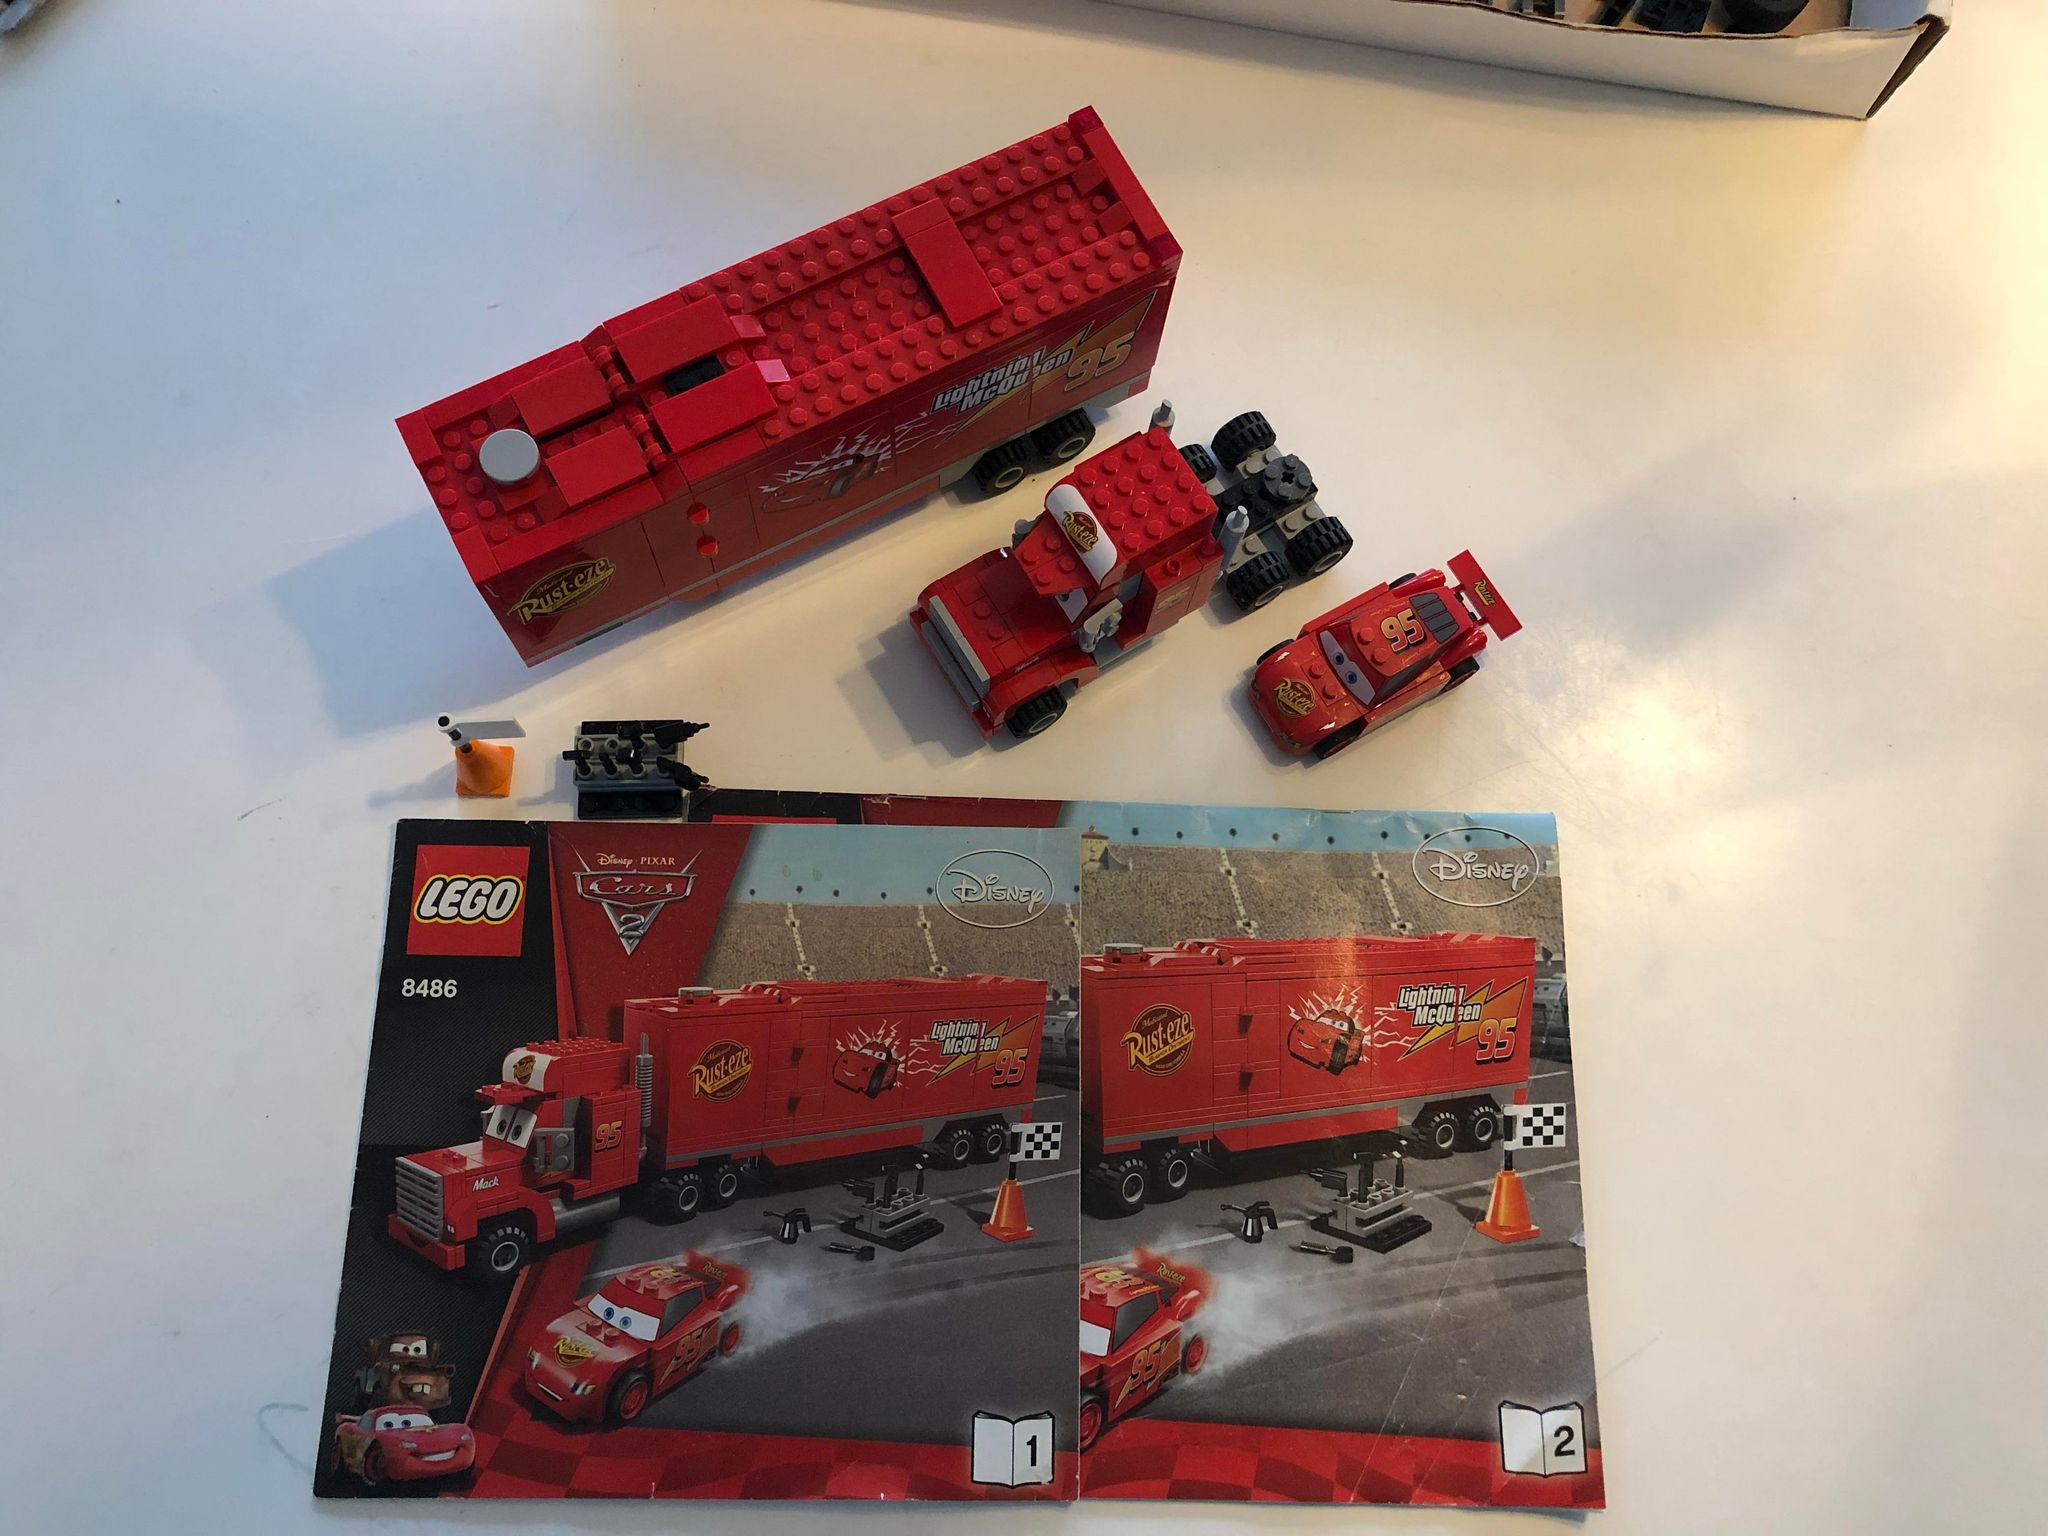 Brugt LEGO: 8486 Team Truck – ER-Games